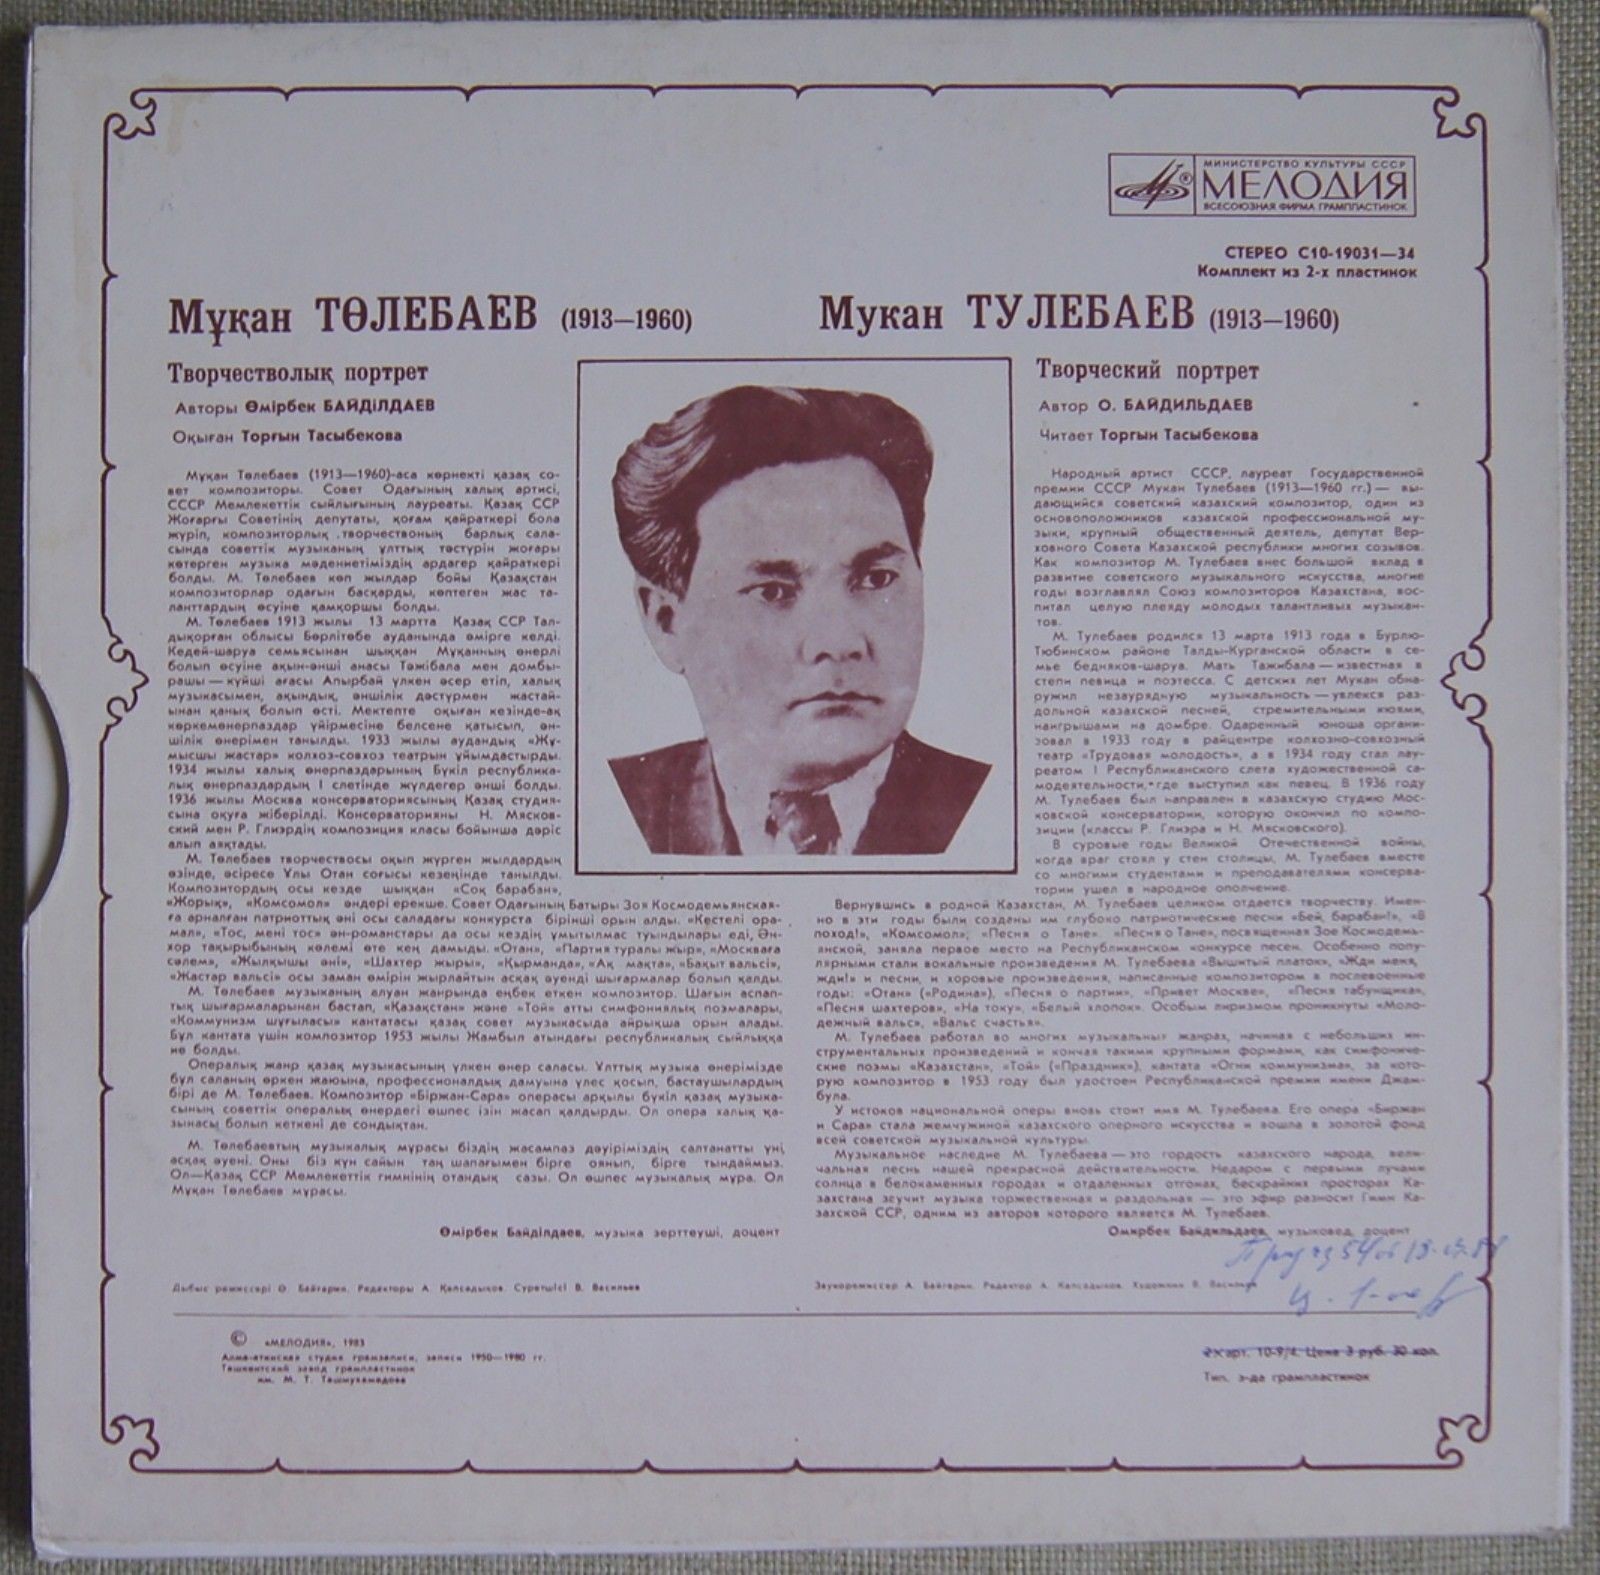 ТВОРЧЕСКИЙ ПОРТРЕТ КОМПОЗИТОРА Мукана ТУЛЕБАЕВА (1913-1960)